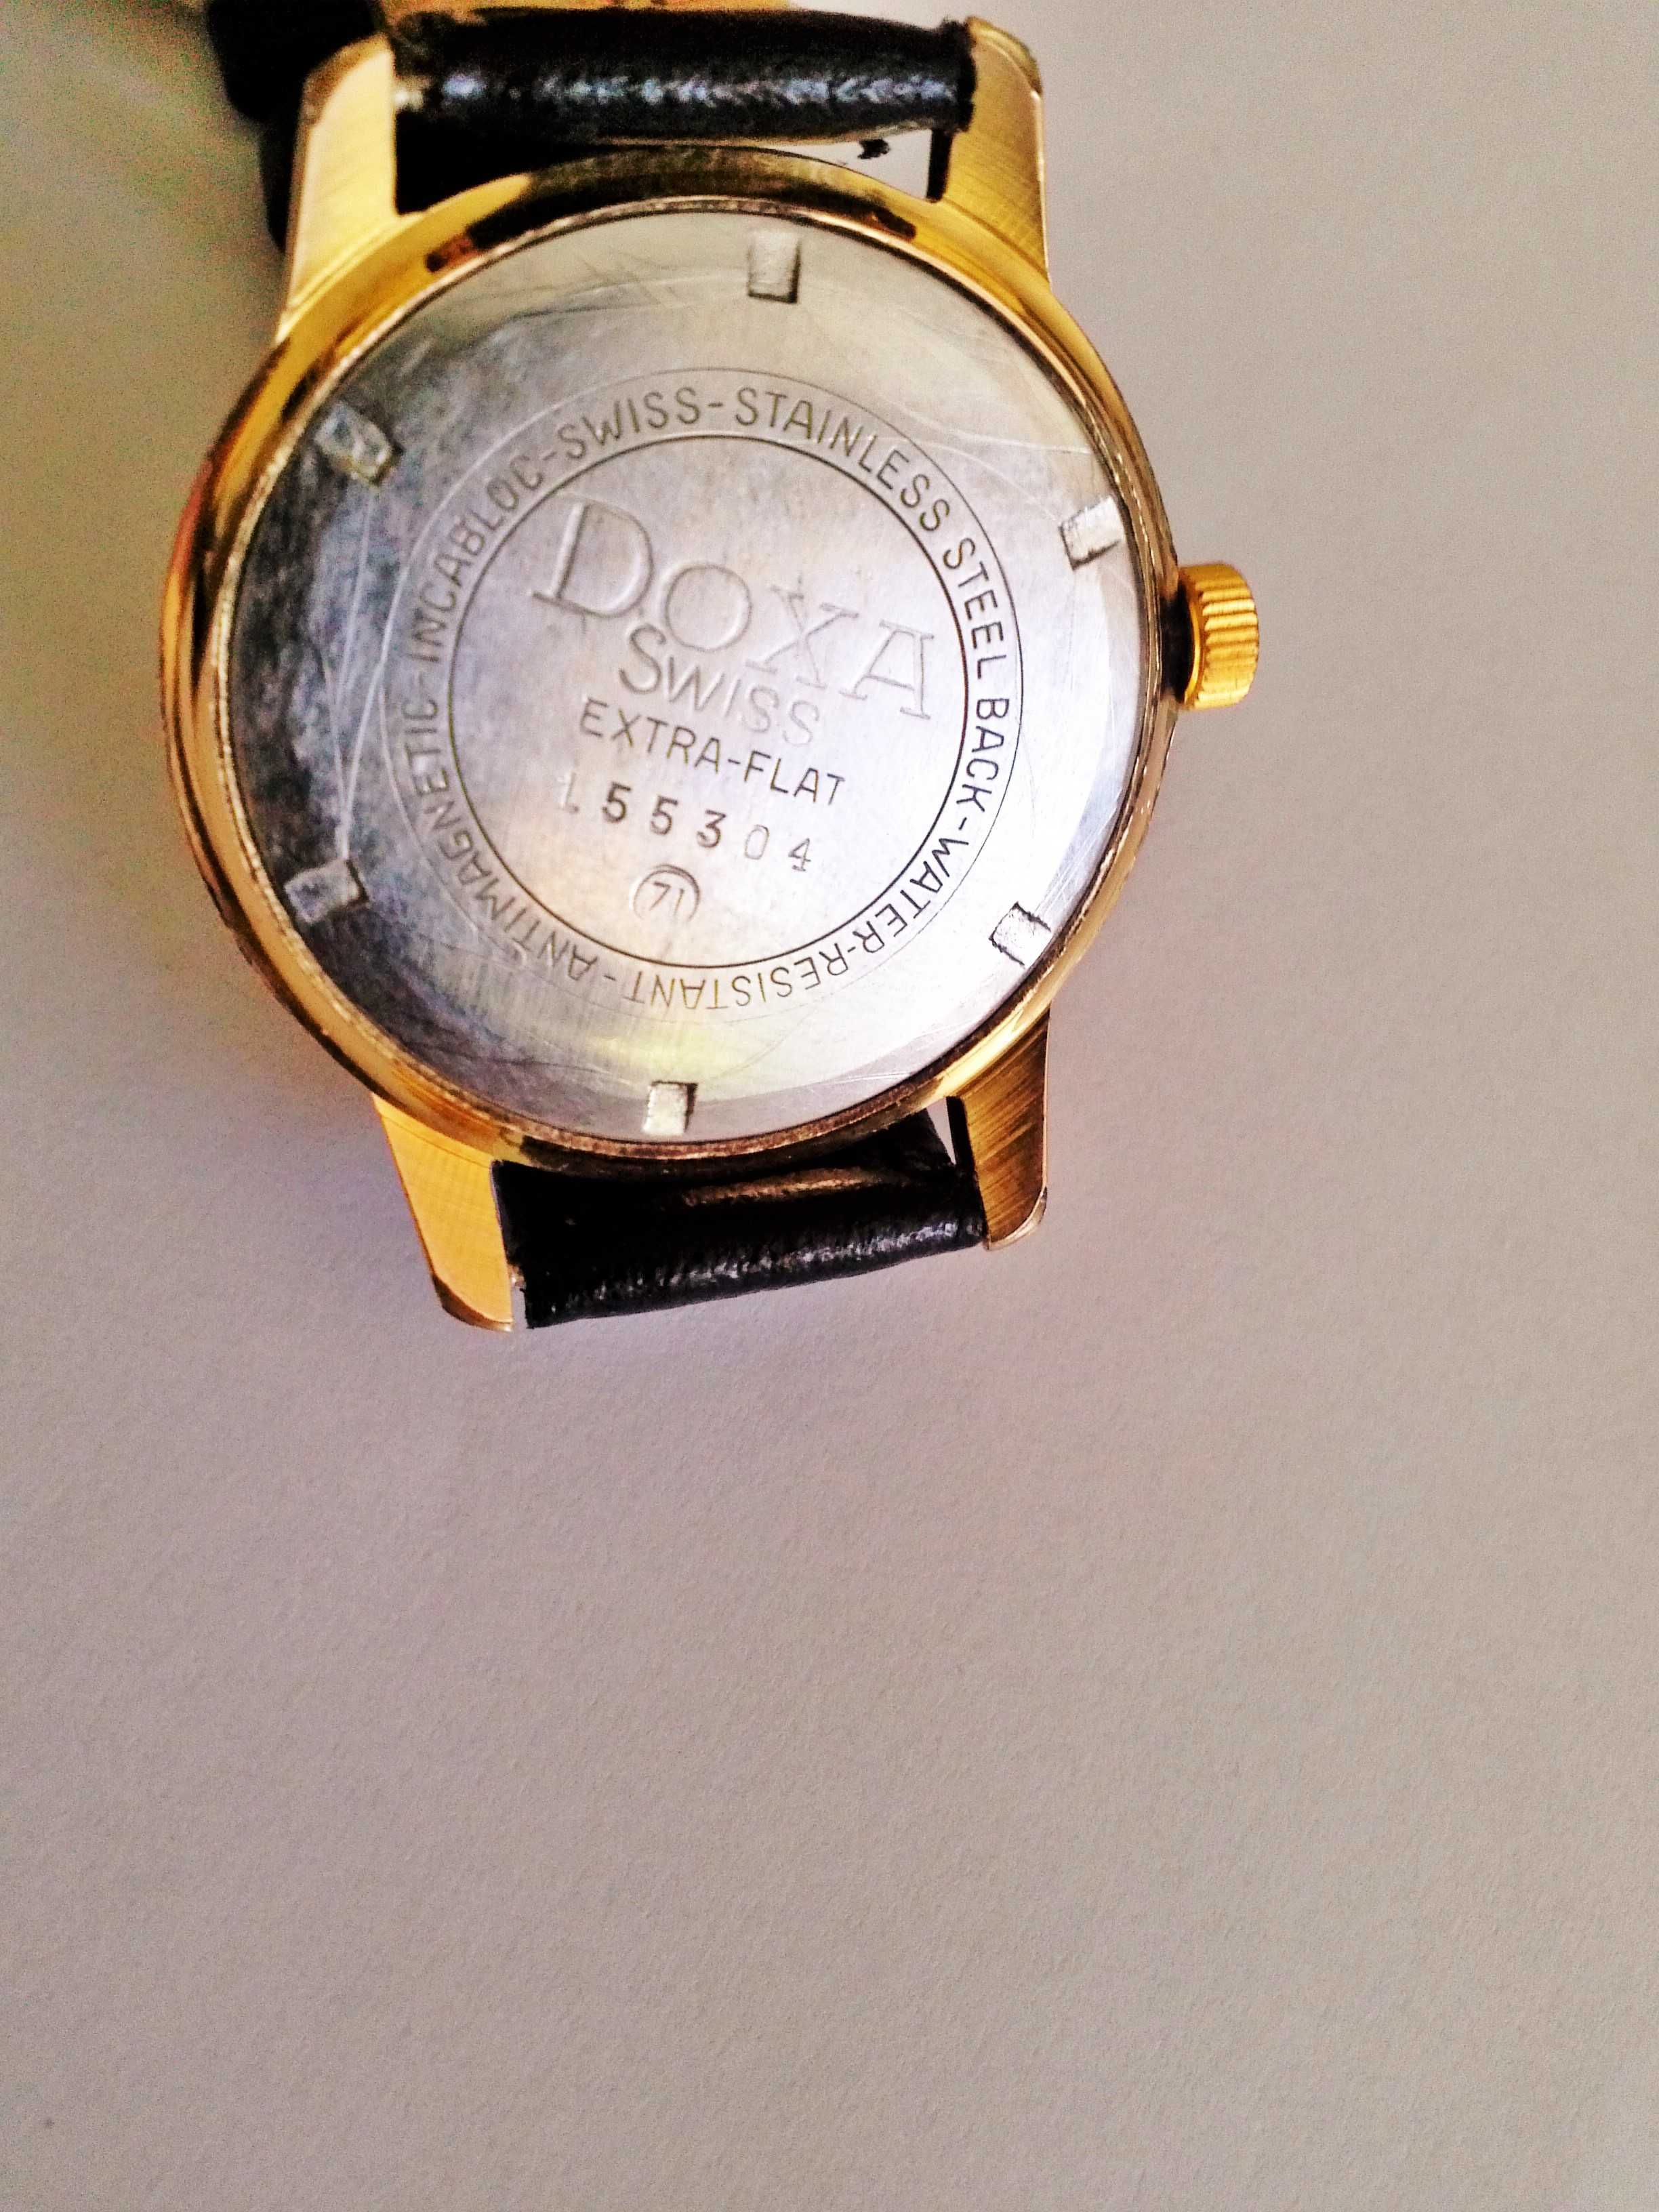 Zegarek Doxa 21 jewels złocona 18K sprawna sr;34mm,piękna